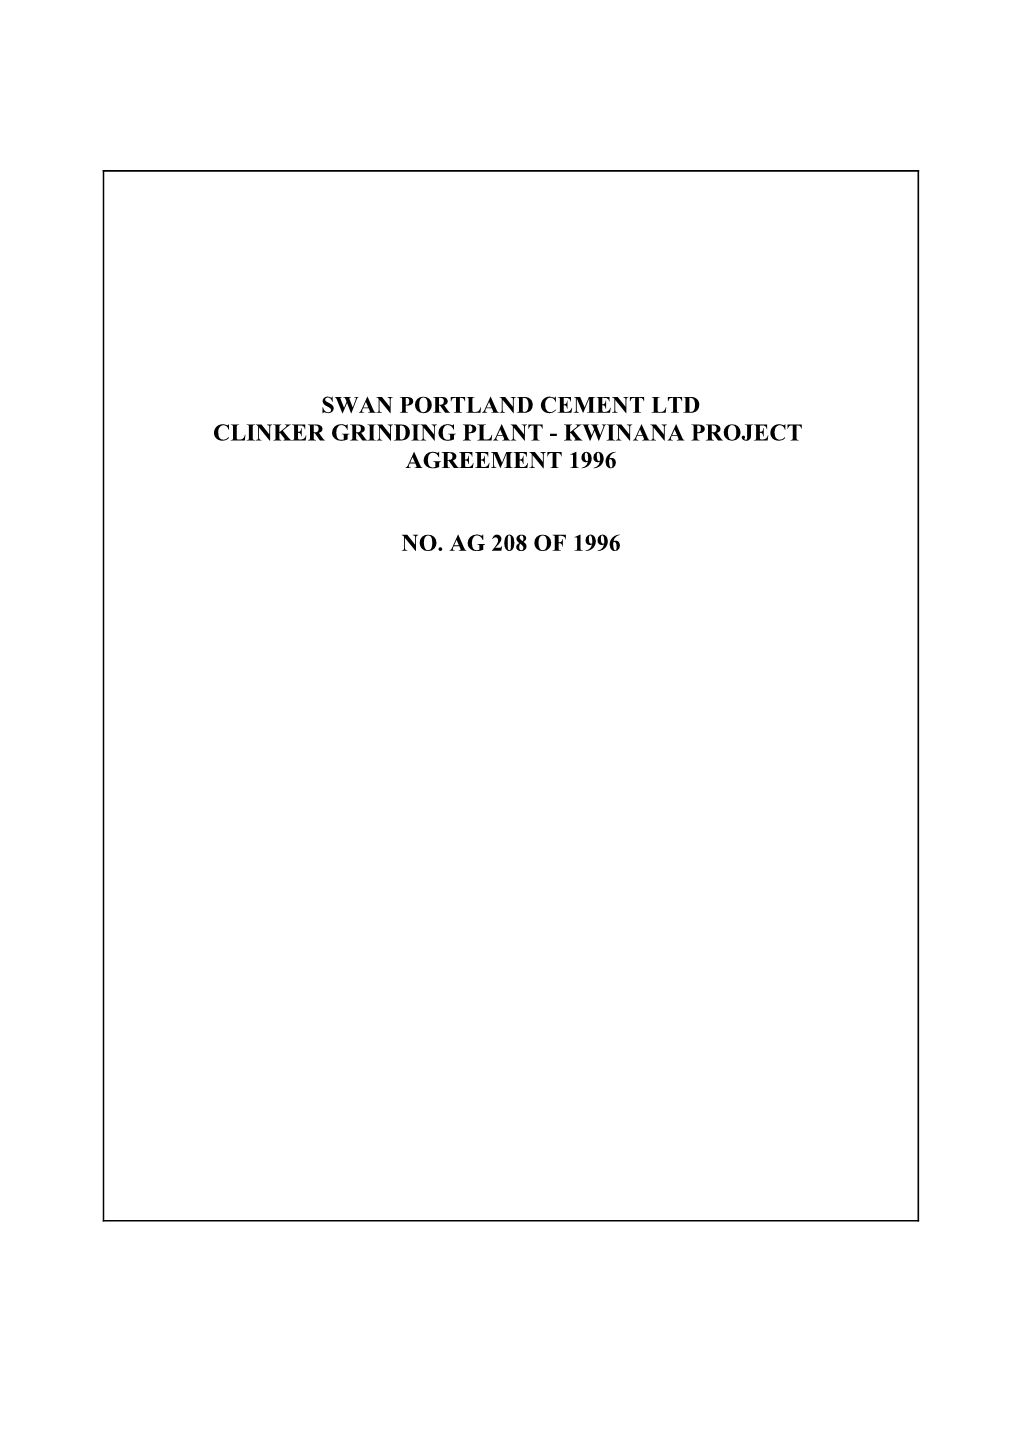 Swan Portland Cement Ltd Clinker Grinding Plant - Kwinana Project Agreement 1996